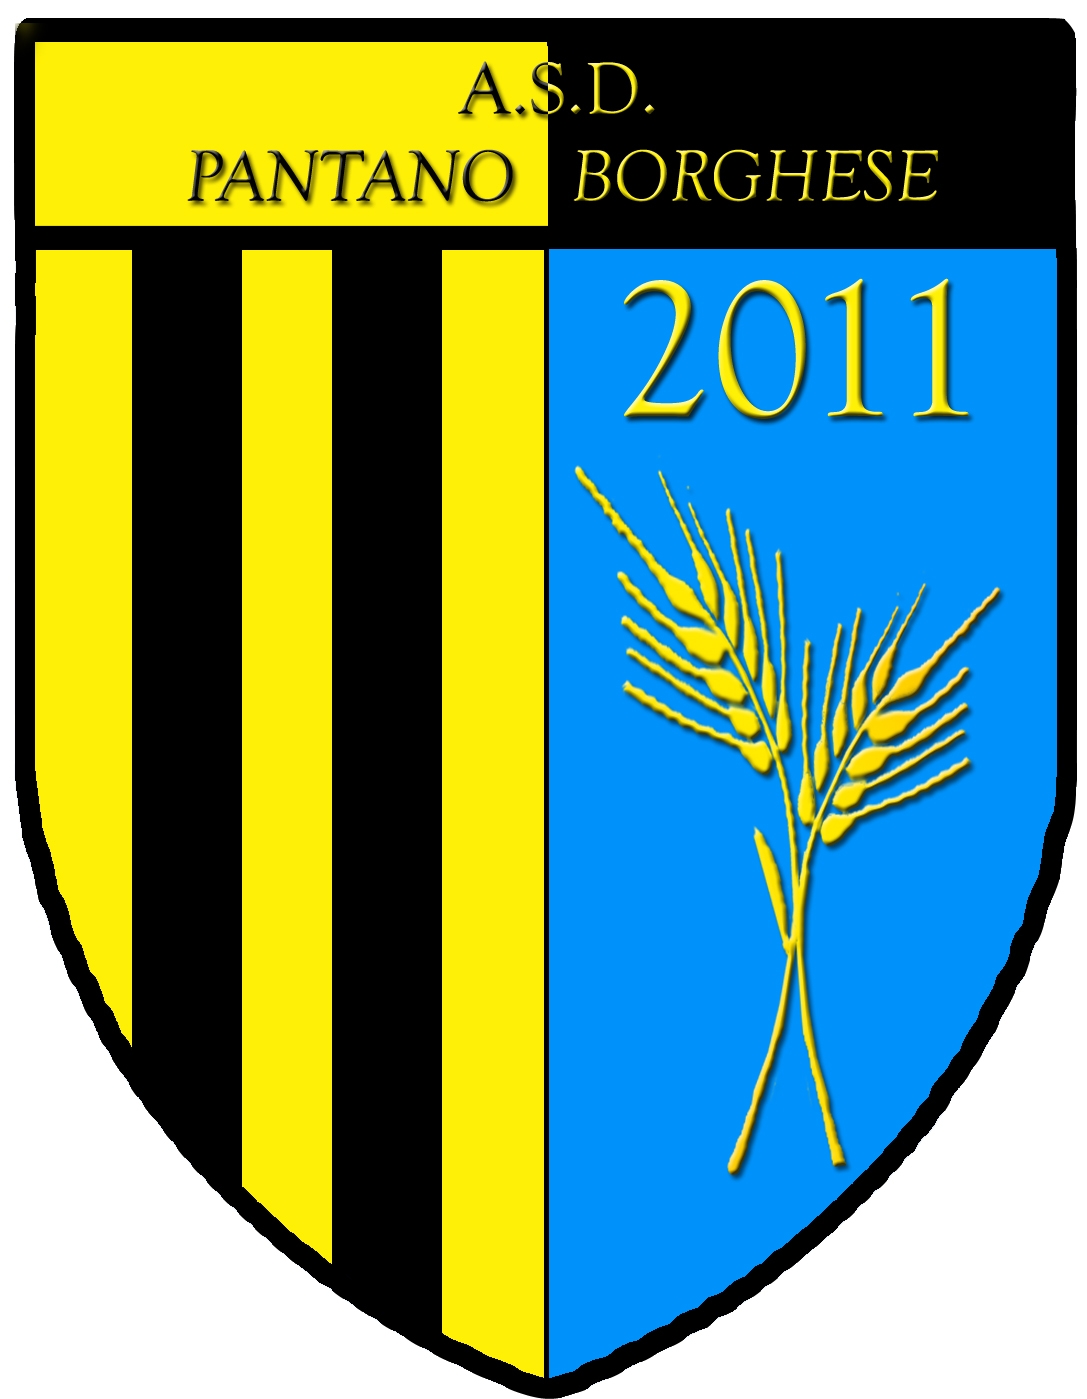 PANTANO BORGHESE